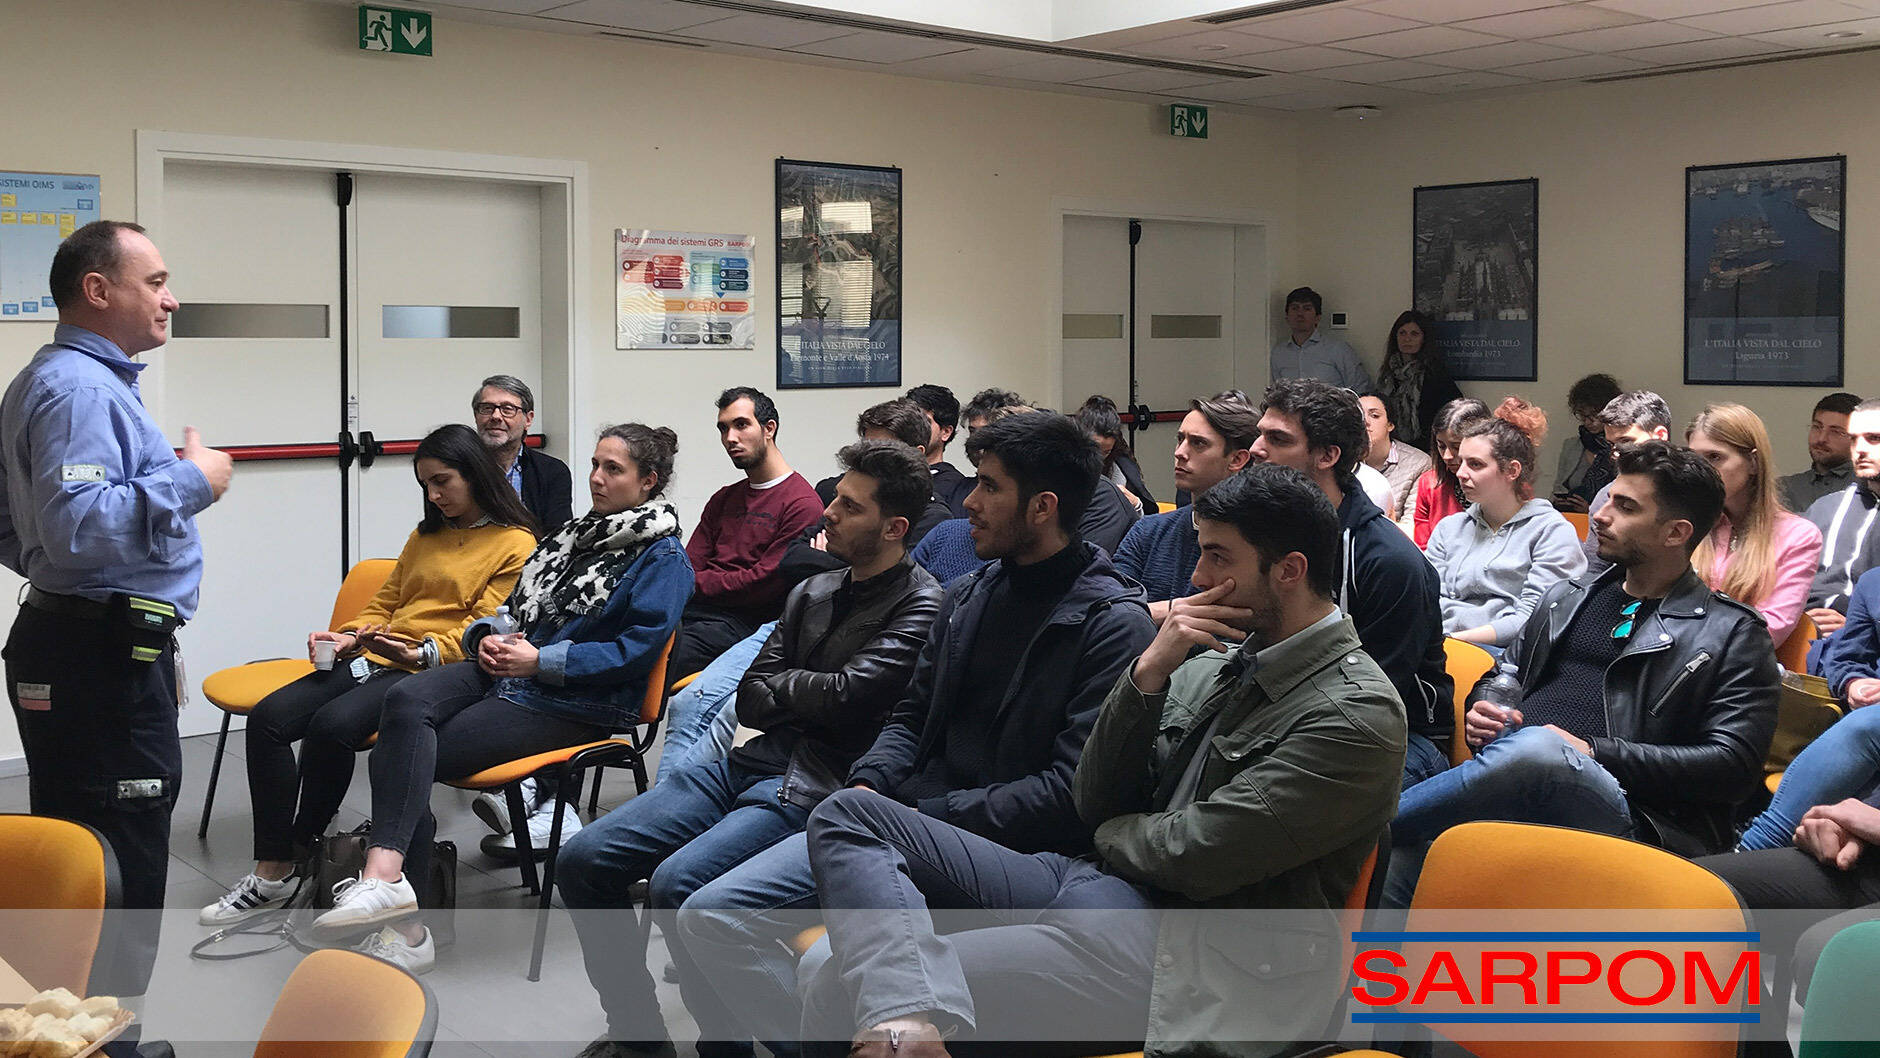 La SARPOM incontra gli studenti dell’università di Genova